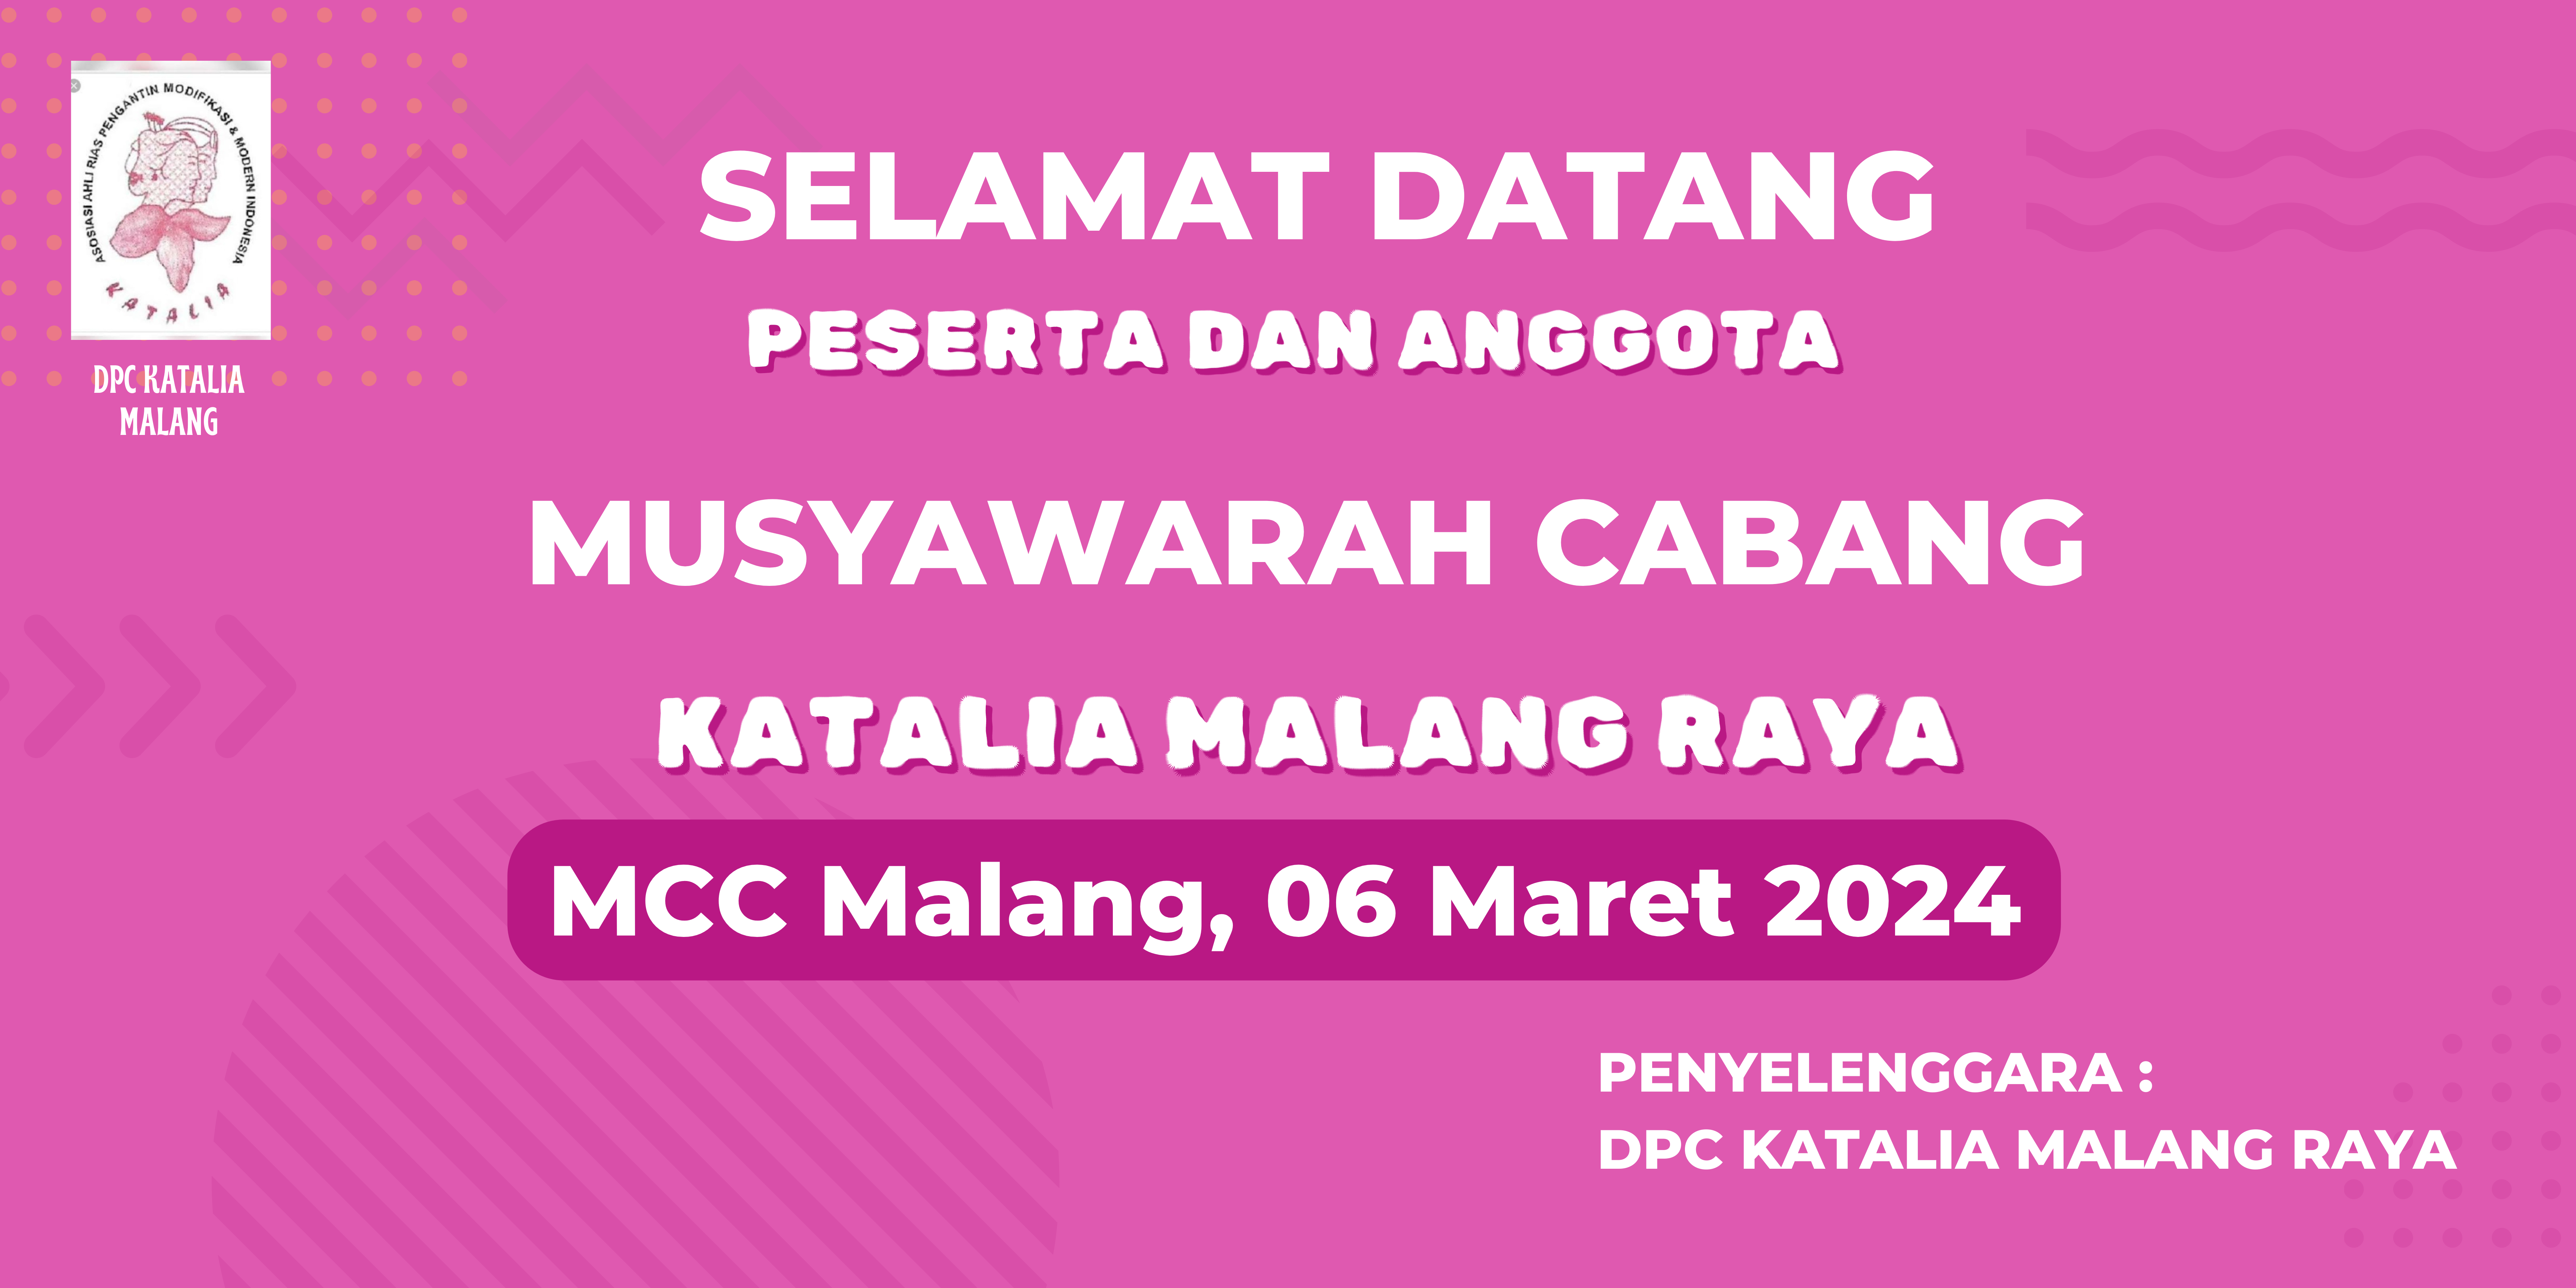 Muscab DPC Malang Raya